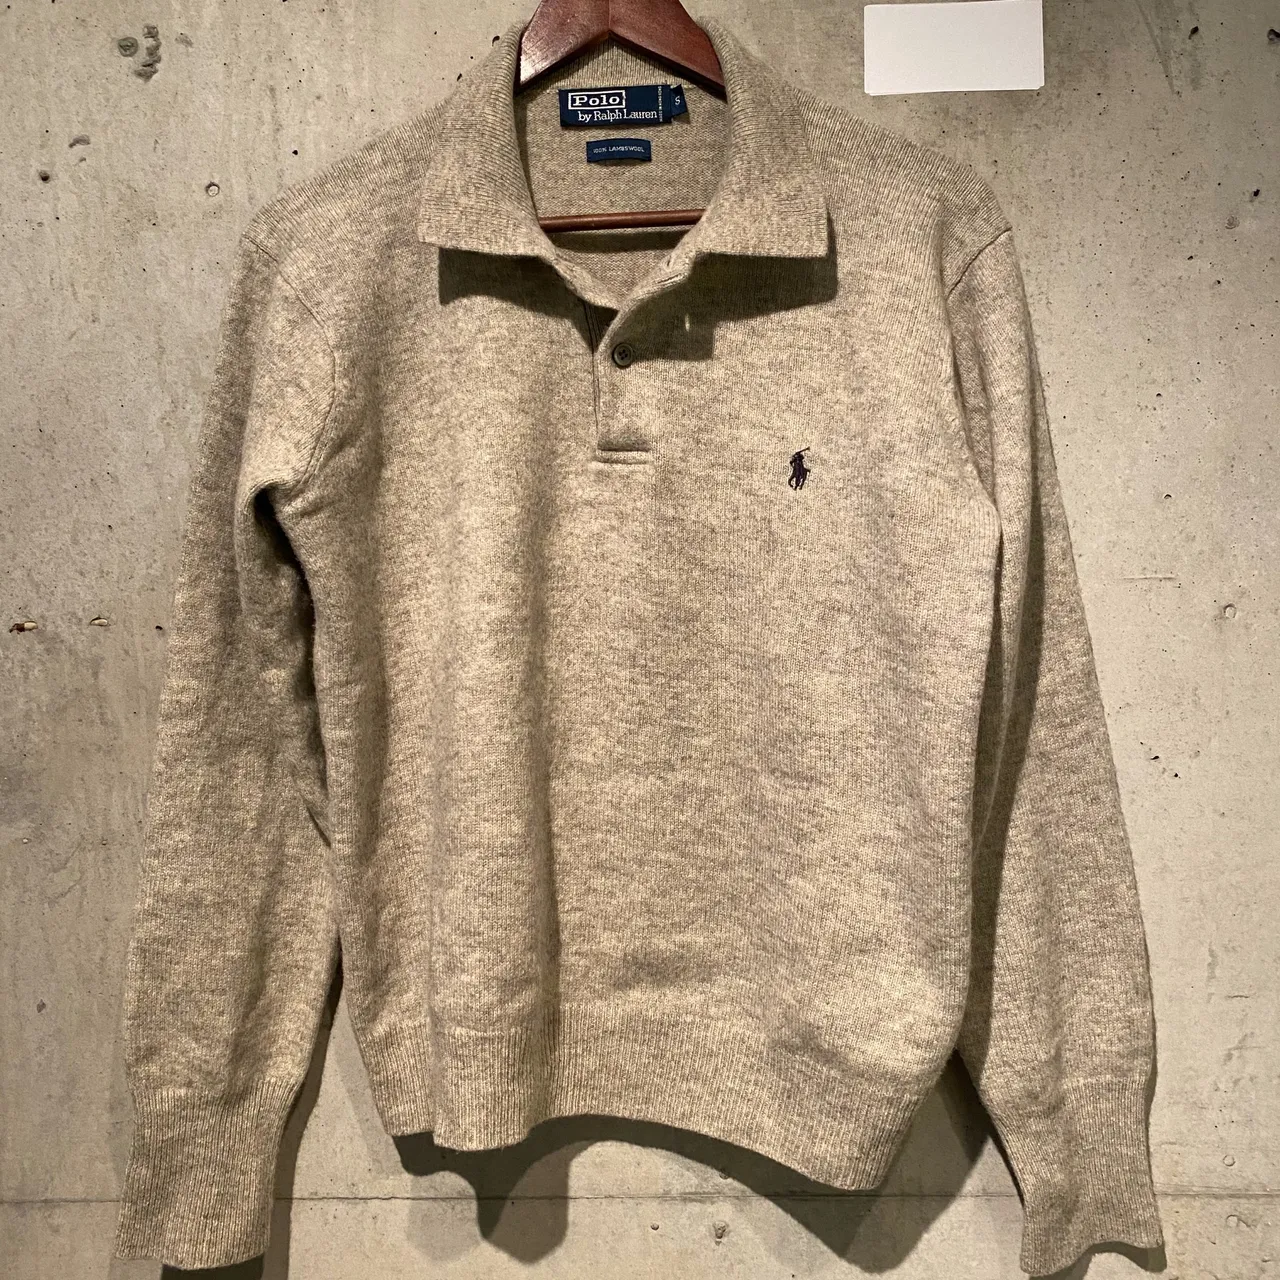 Ralph Lauren sweater knit polo shirt photo 1